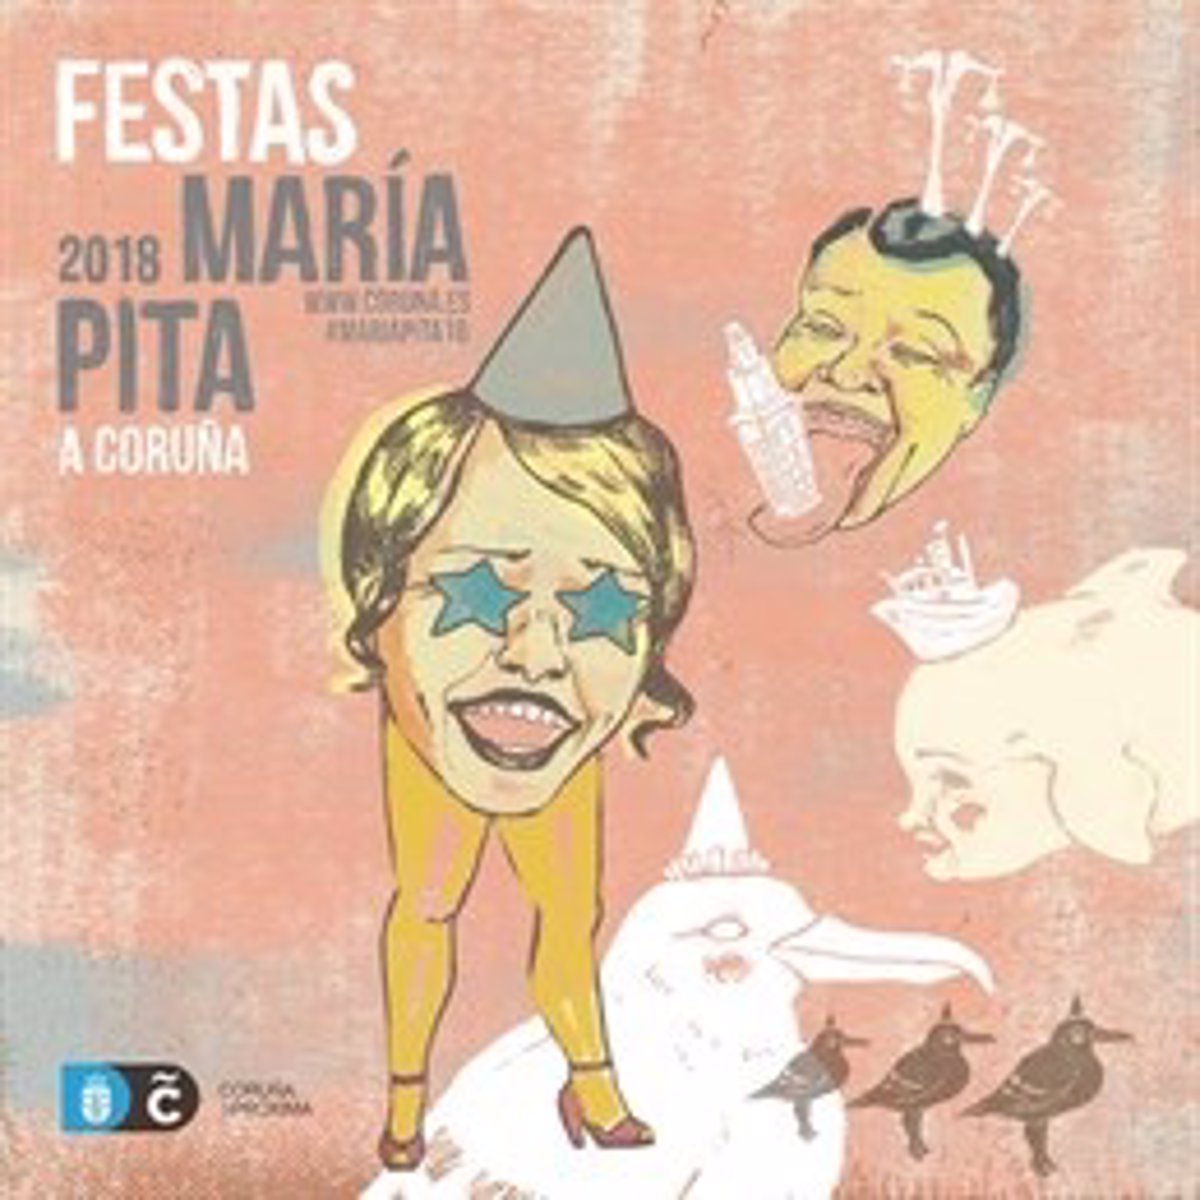 Las fiestas de María Pita en A Coruña arrancan este miércoles contarán con Gloria Gaynor, Raphael y Estrella Morente